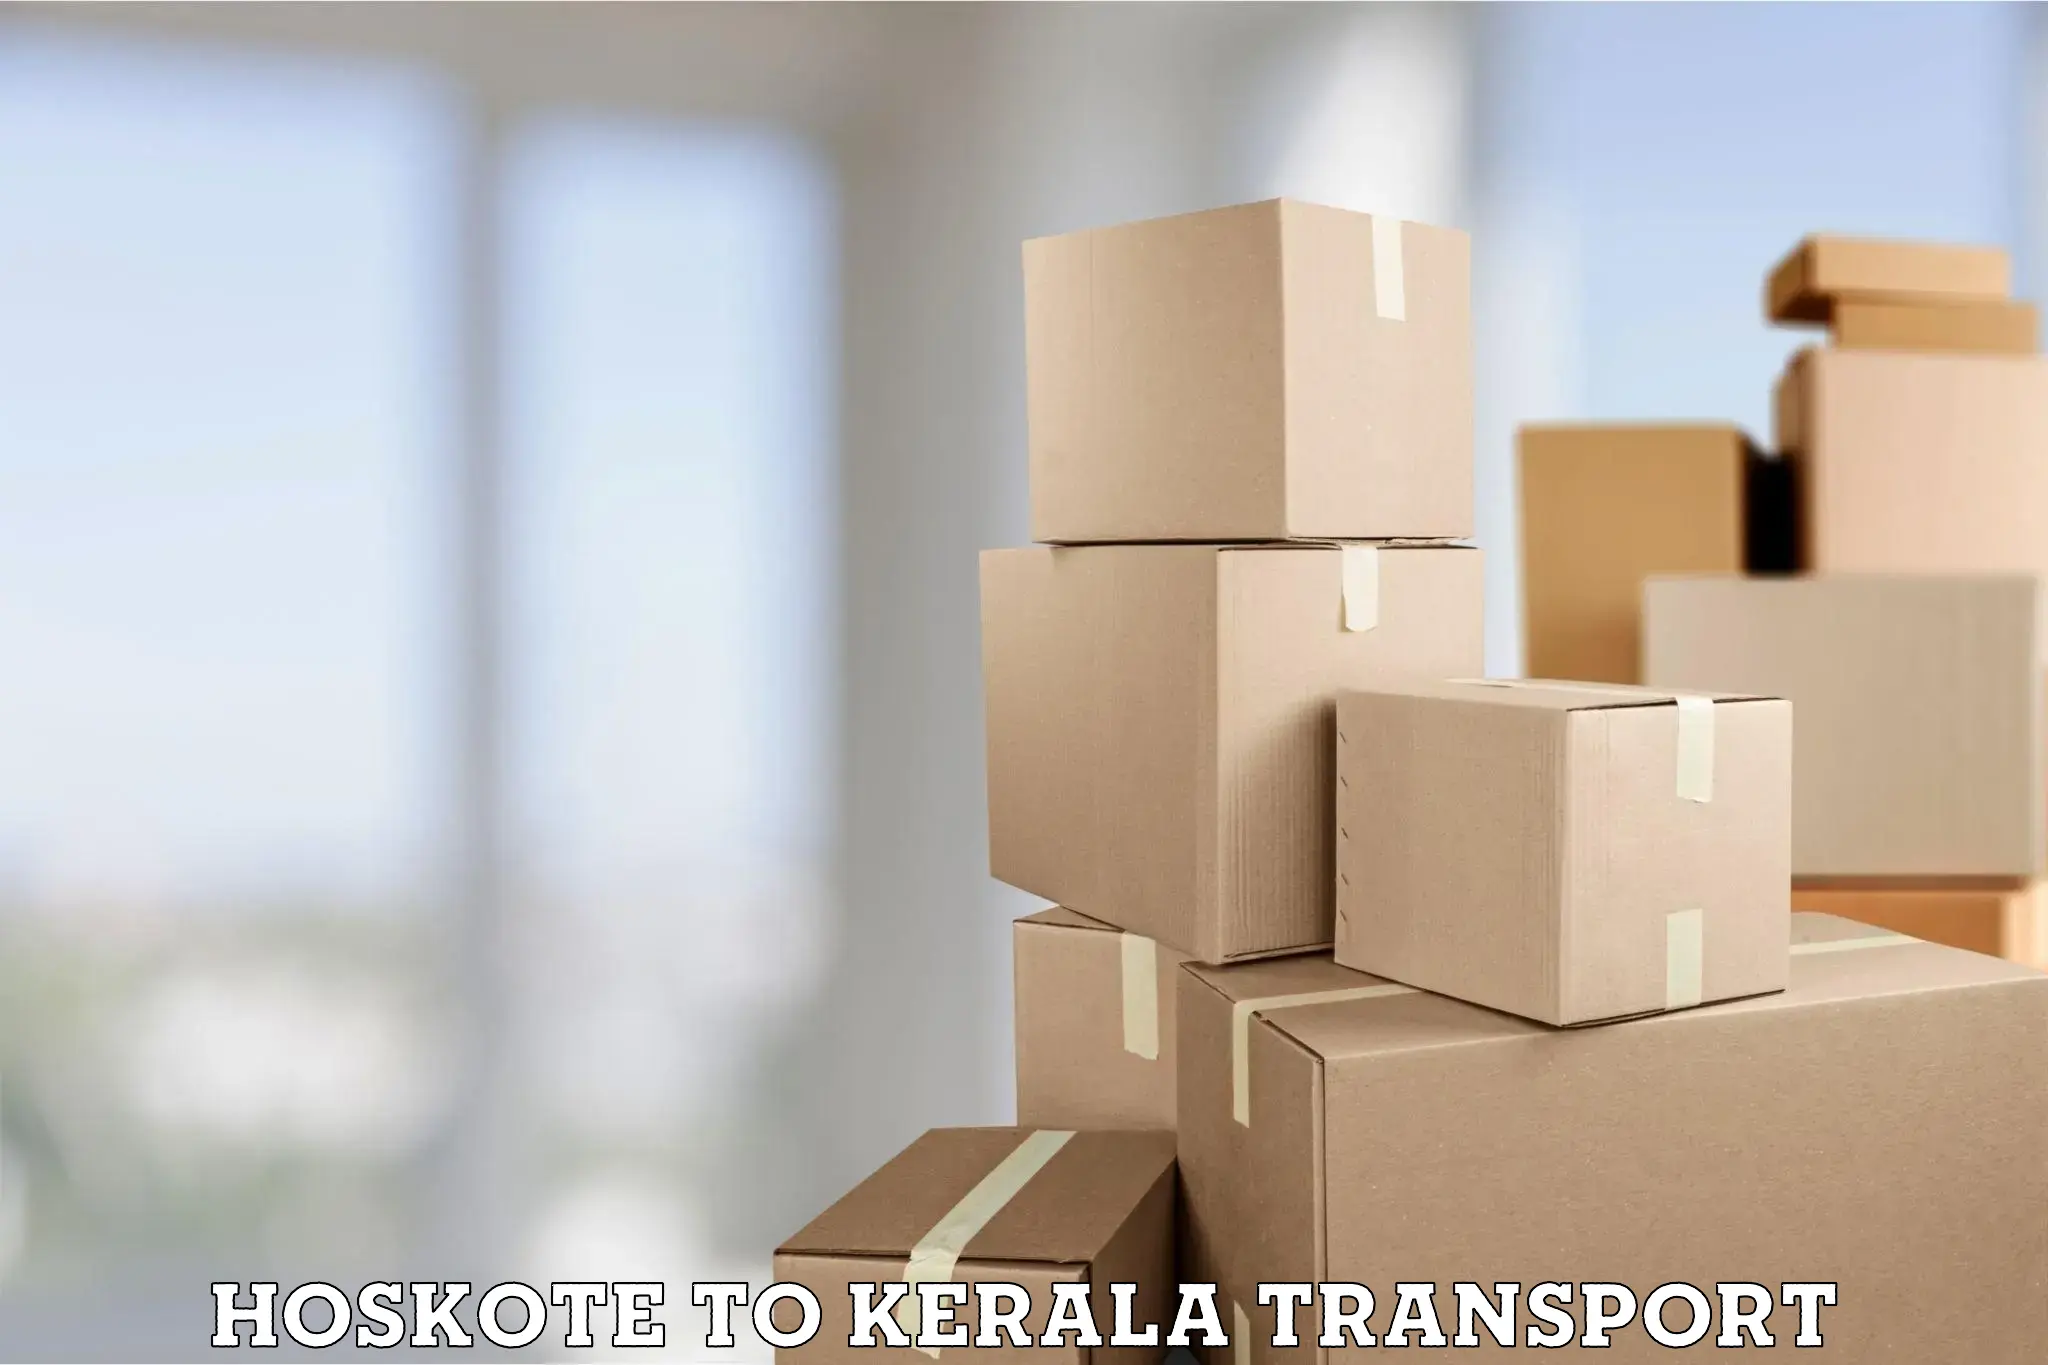 Online transport service Hoskote to Mundakayam